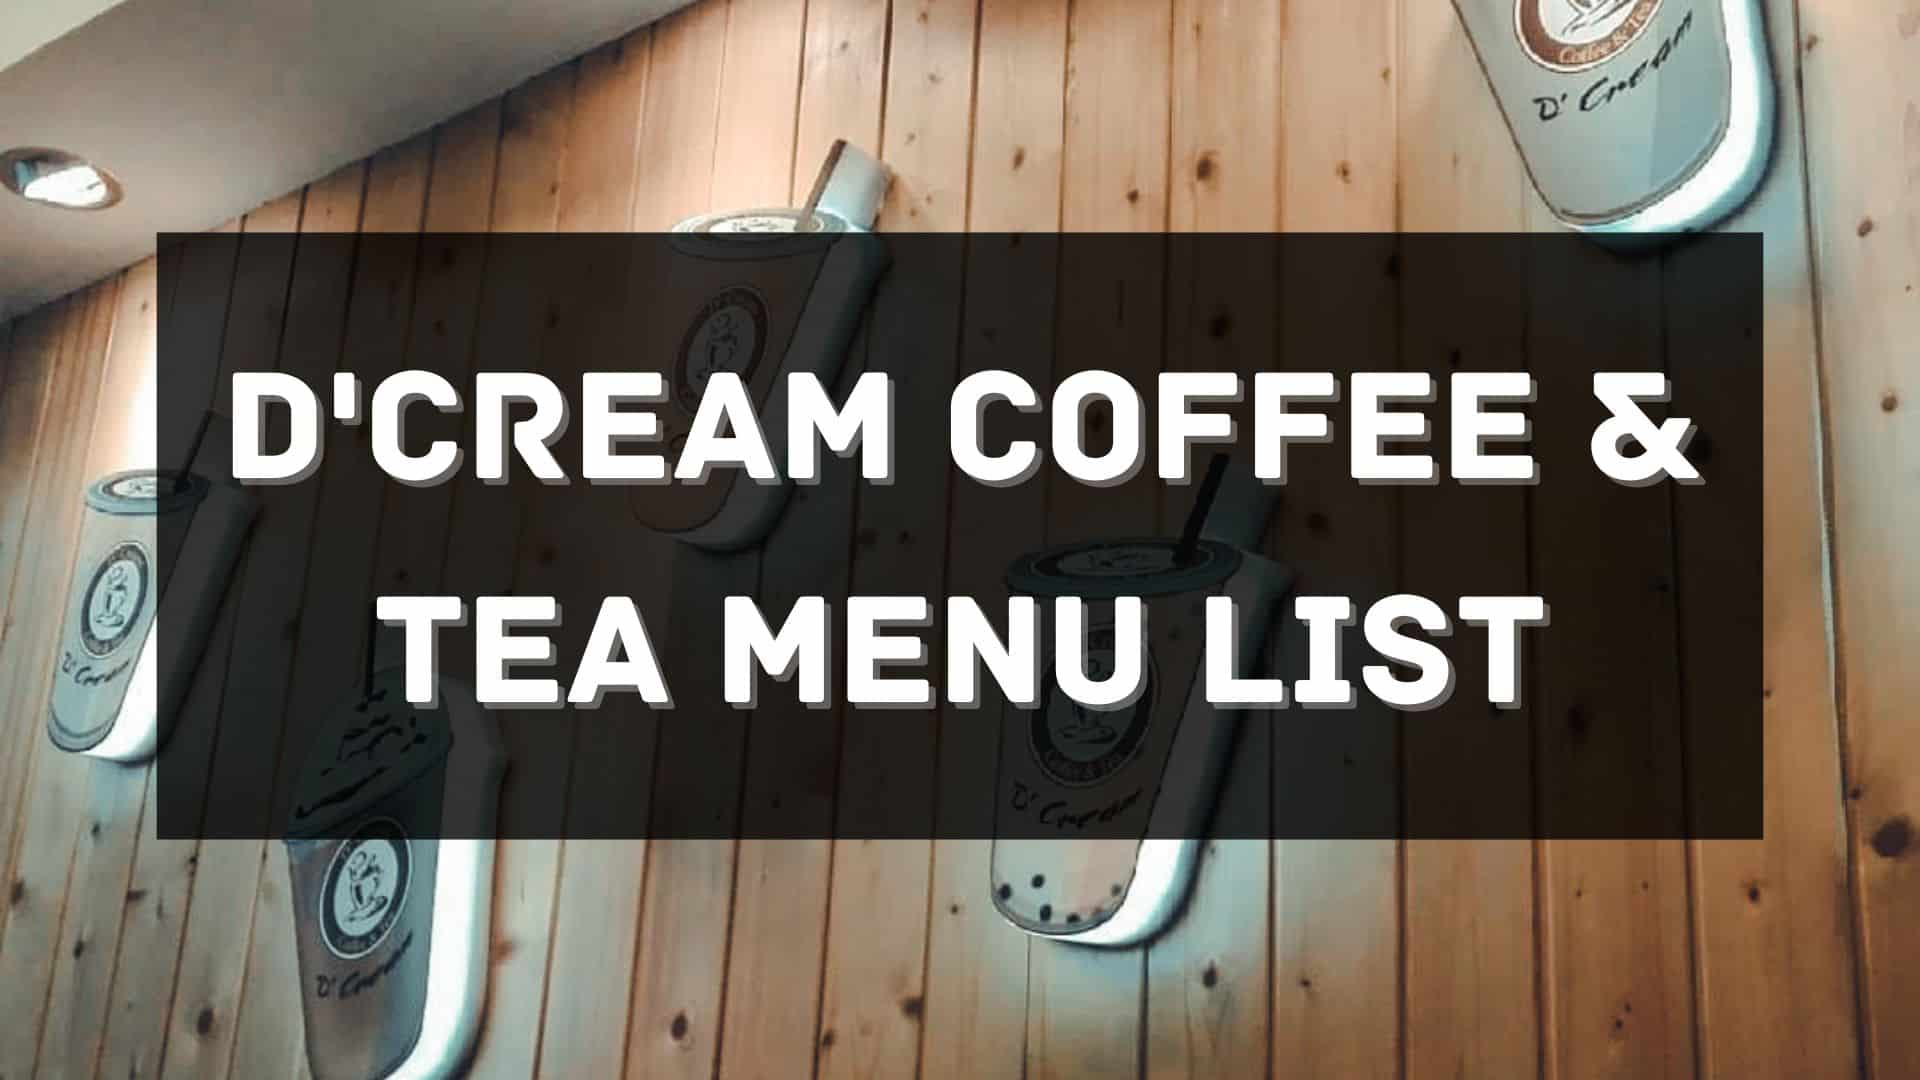 d'cream coffee & tea menu prices philippines